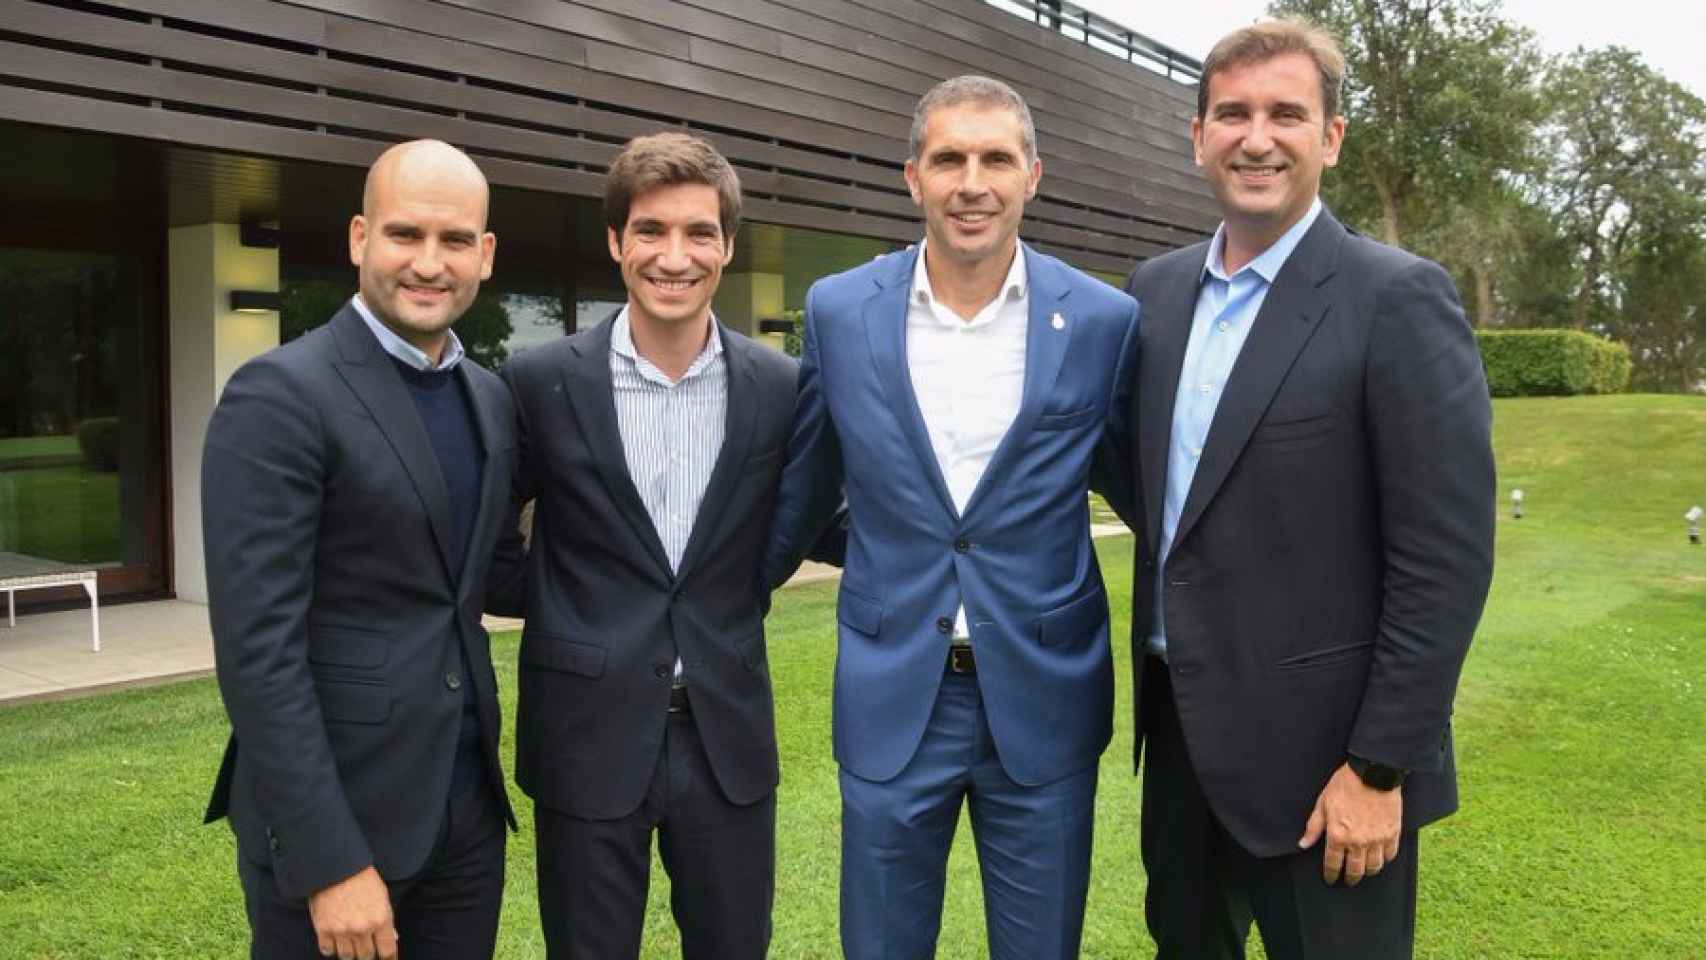 Pere Guardiola y Ferran Soriano, CEO del City Group, nuevos propietarios del Girona en 2017